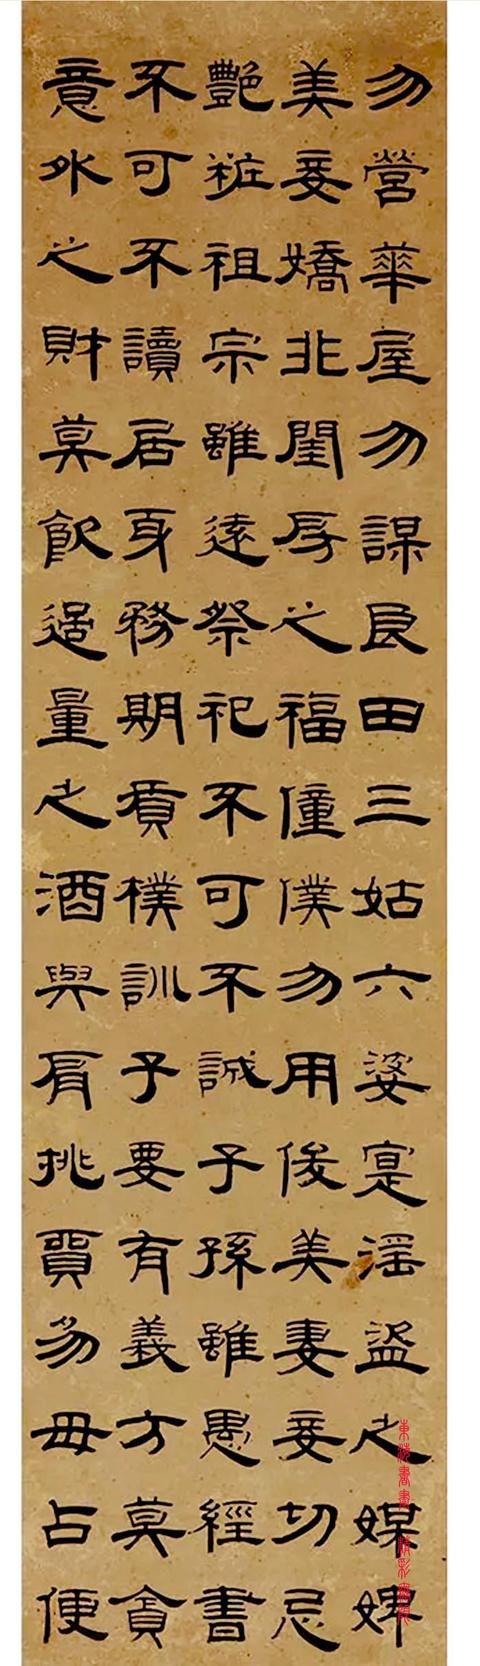 桂馥 1788年作 隶书《朱伯庐治家格言》六屏镜心